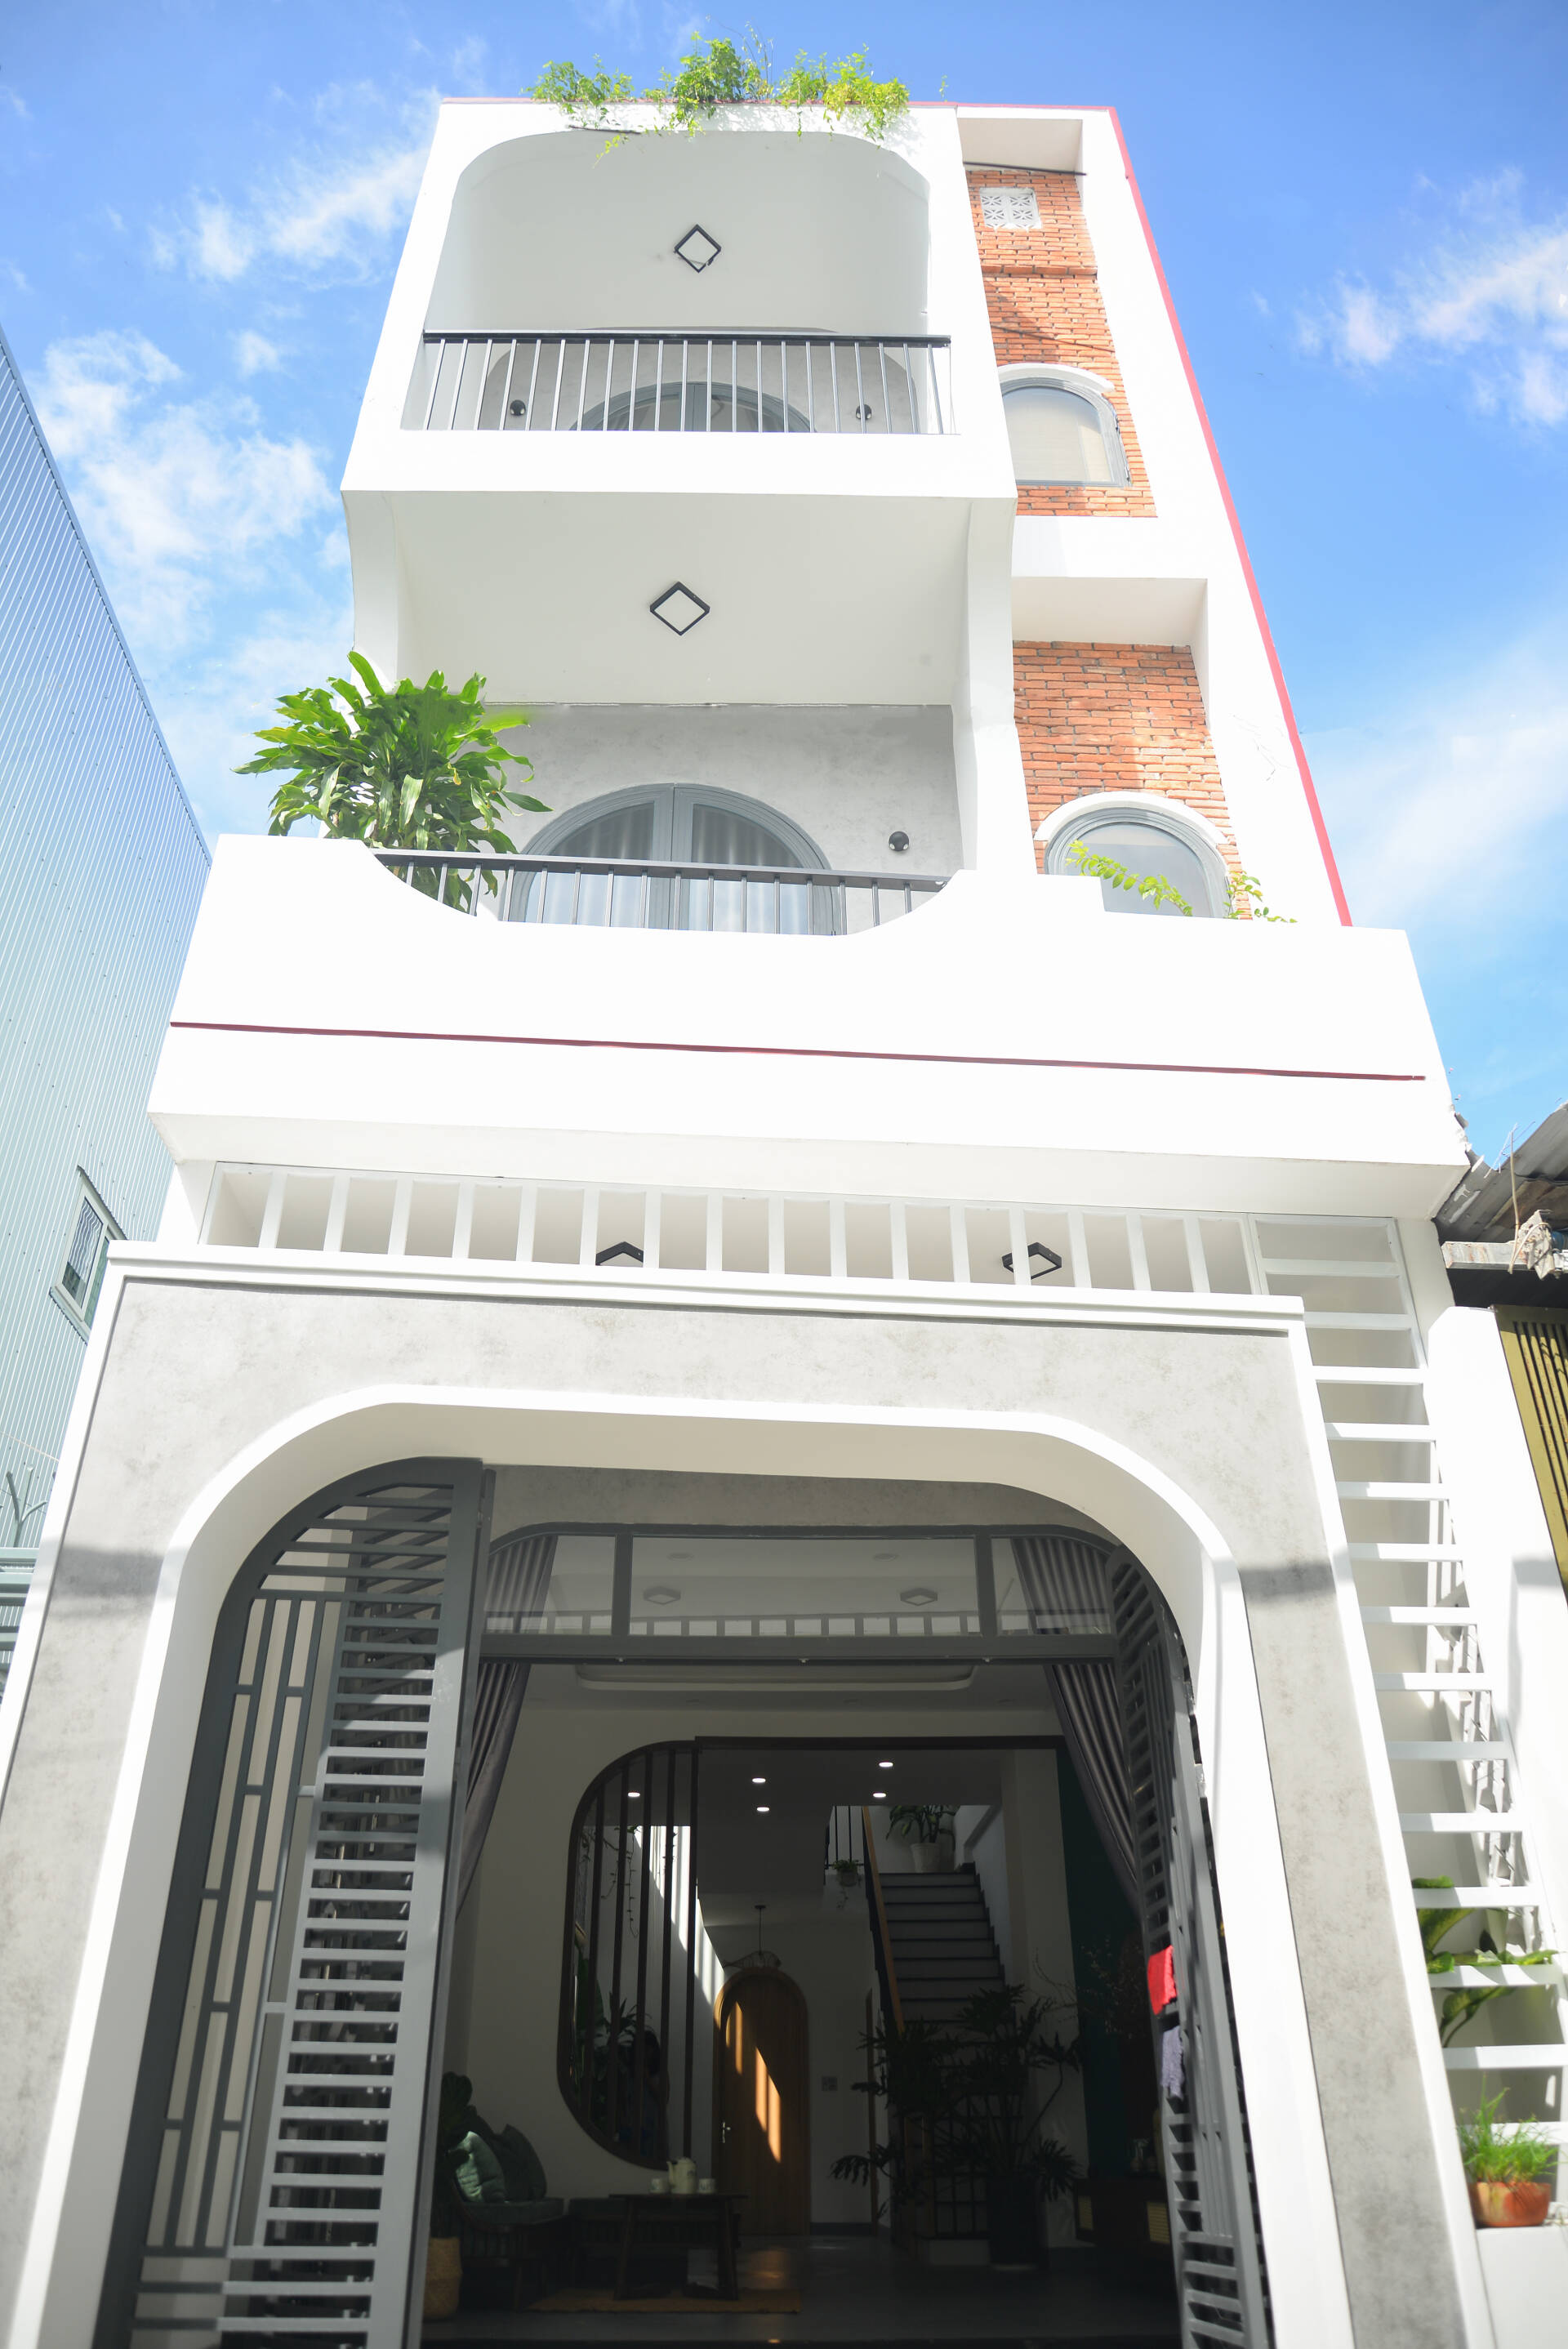 Chàng trai Đà Nẵng đã hoàn thiện mong ước xây nhà 3 tầng cho bố mẹ, căn nhà 4x17,8 thoáng sáng, điểm nhấn "đừng bao giờ tiếc tiền thuê KTS"